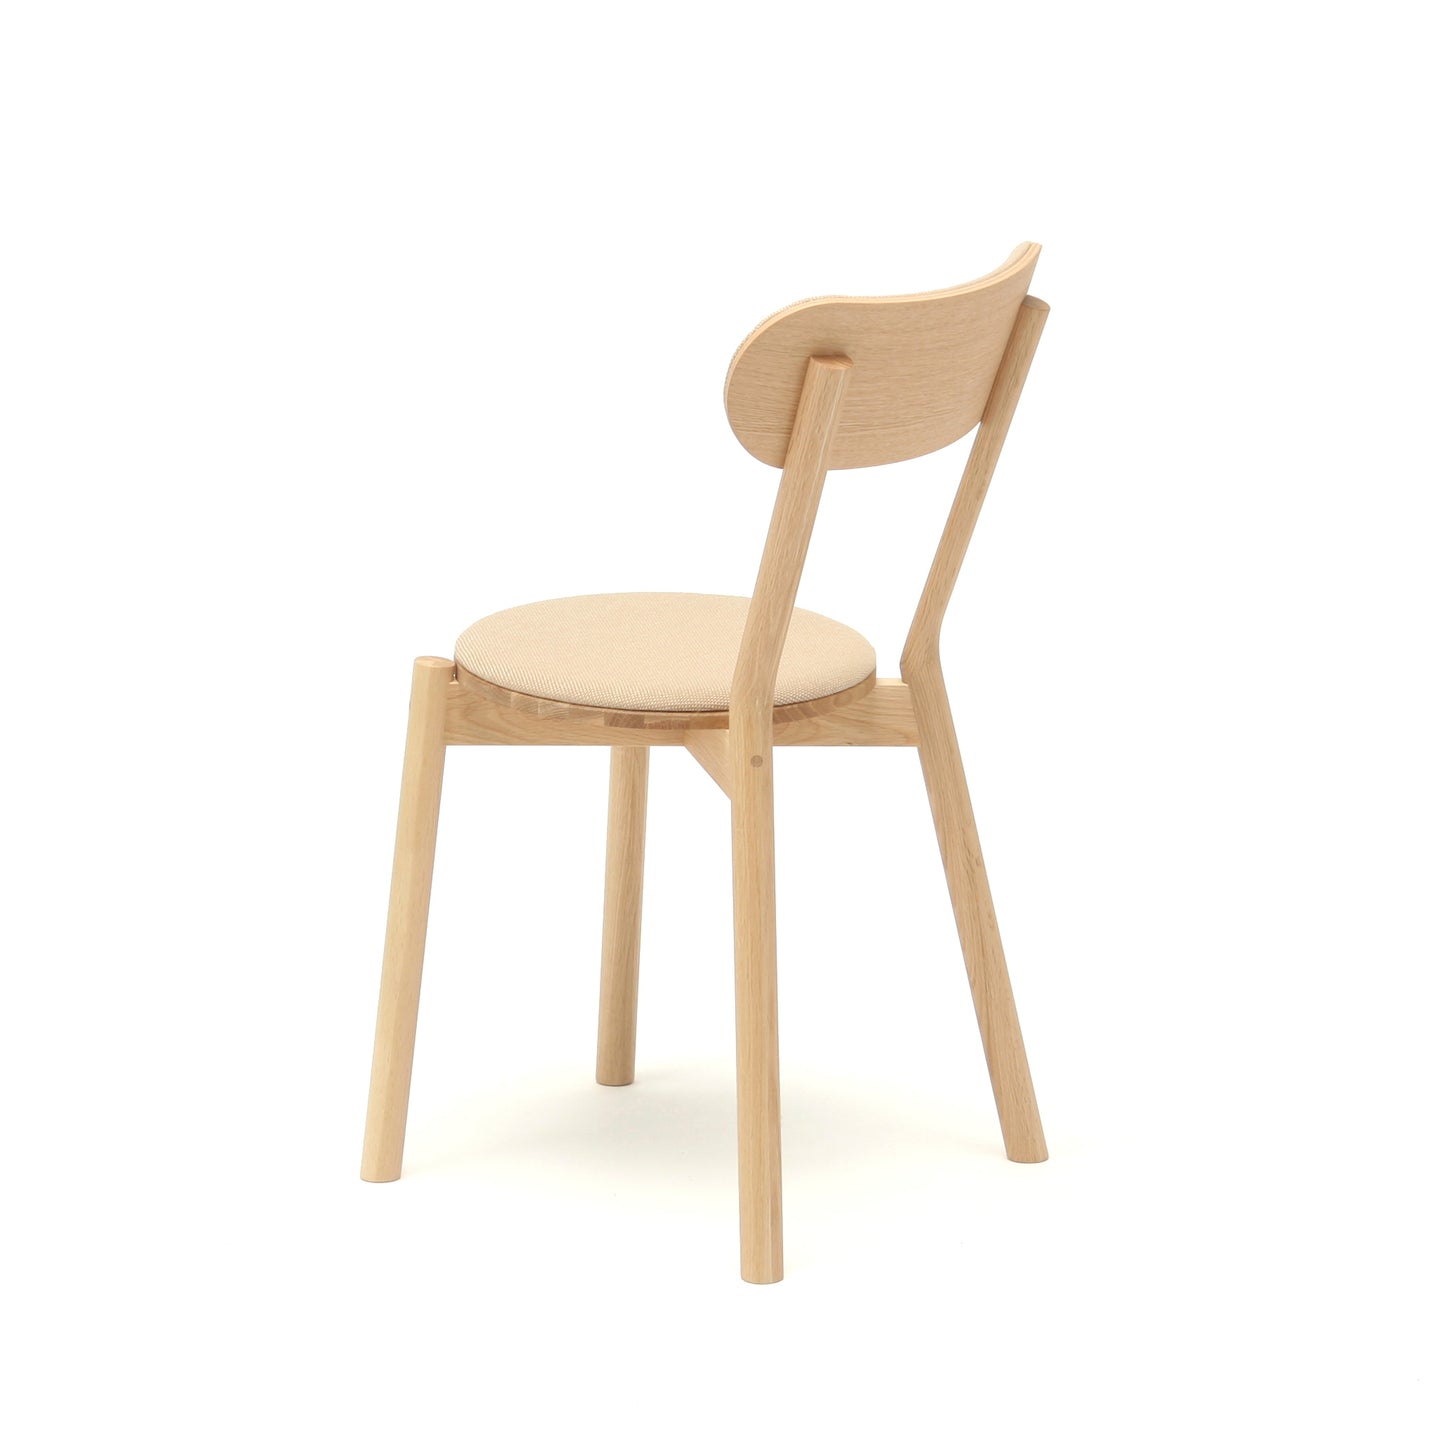 Castor Chair Pad | キャストールチェアパッド